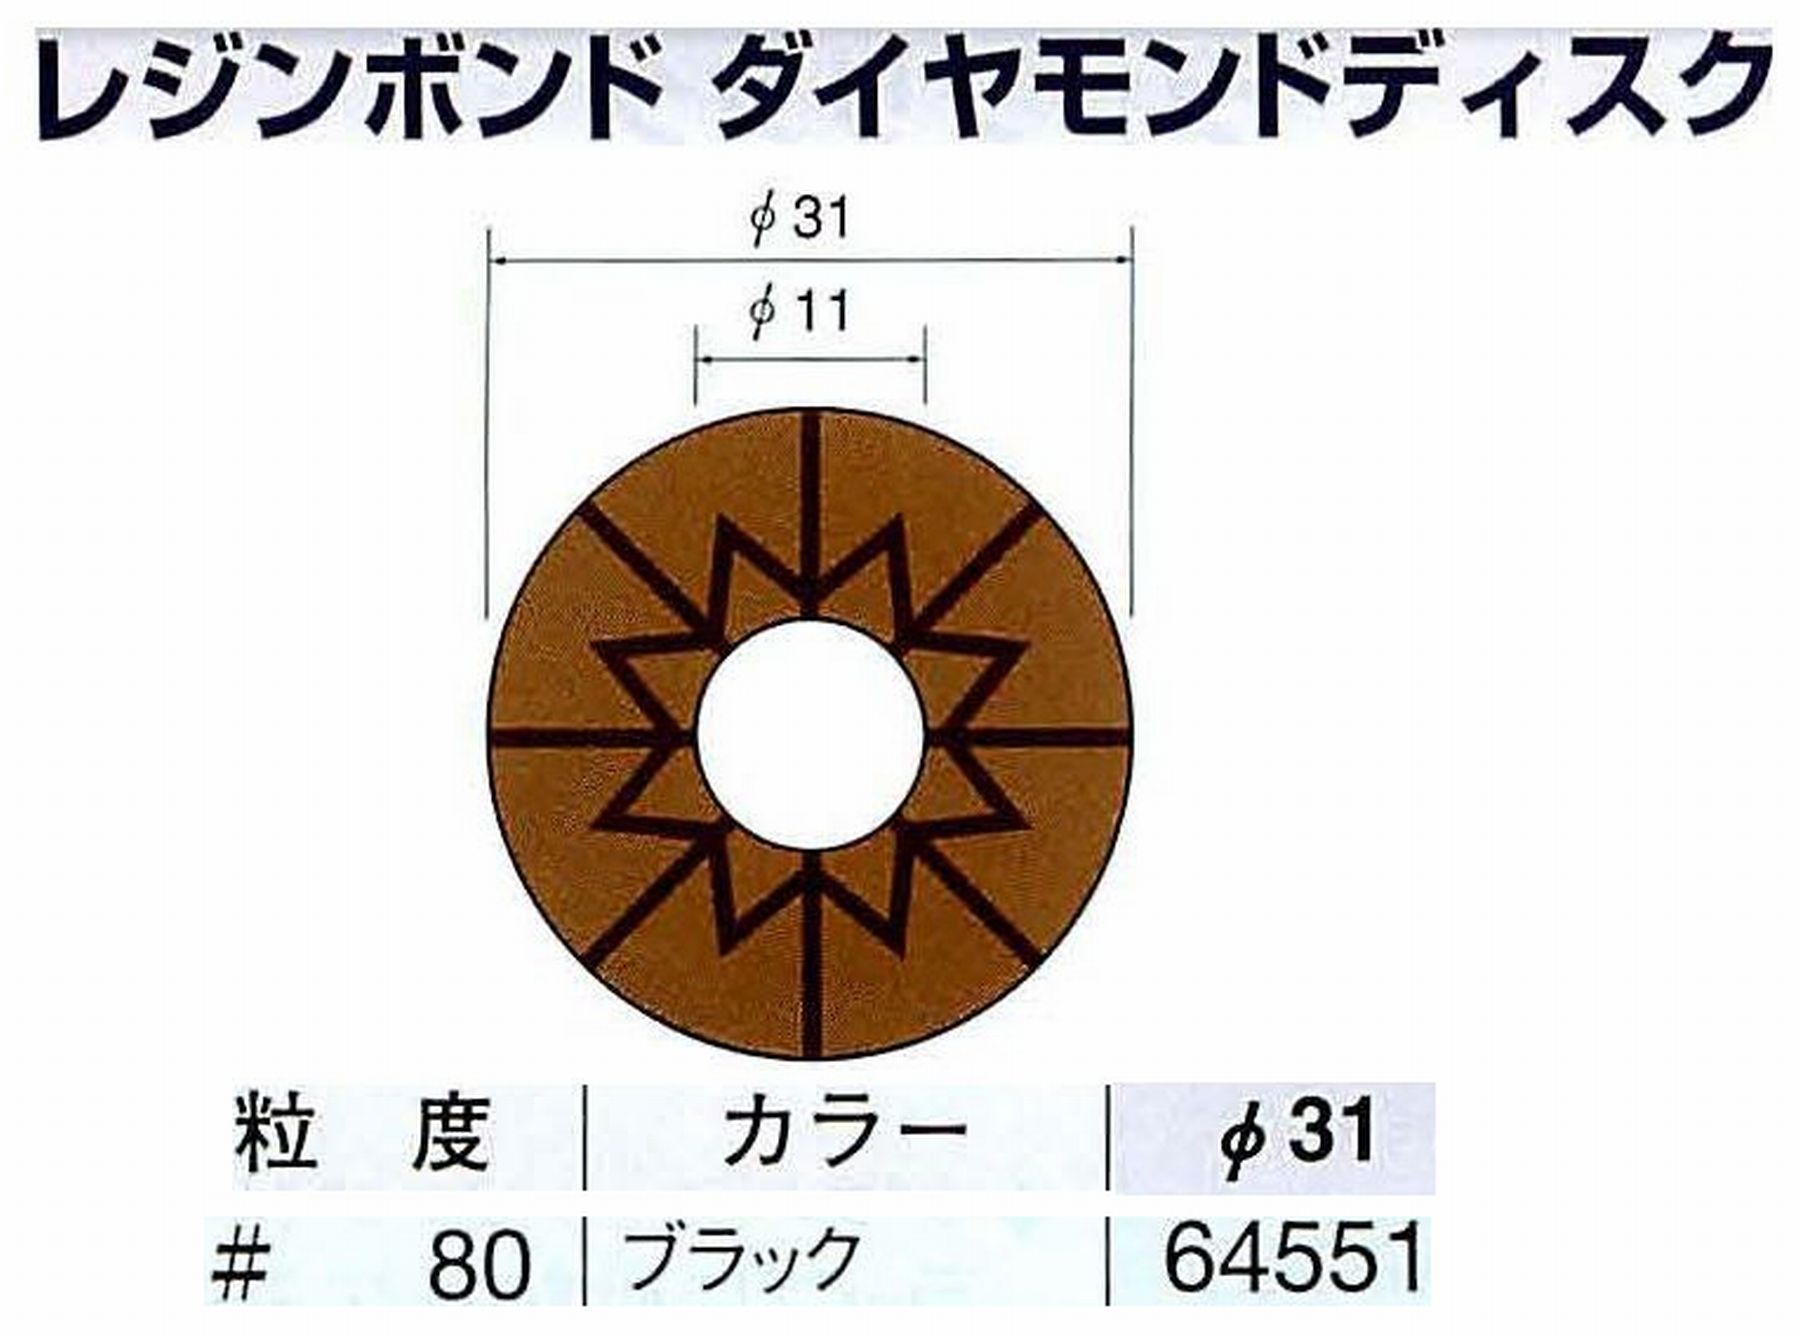 ナカニシ/NAKANISHI アングルグラインダ(電動・エアー) アングルアタッチメント専用工具 レジンボンド ダイヤモンドディスク(パターンタイプ) 64551